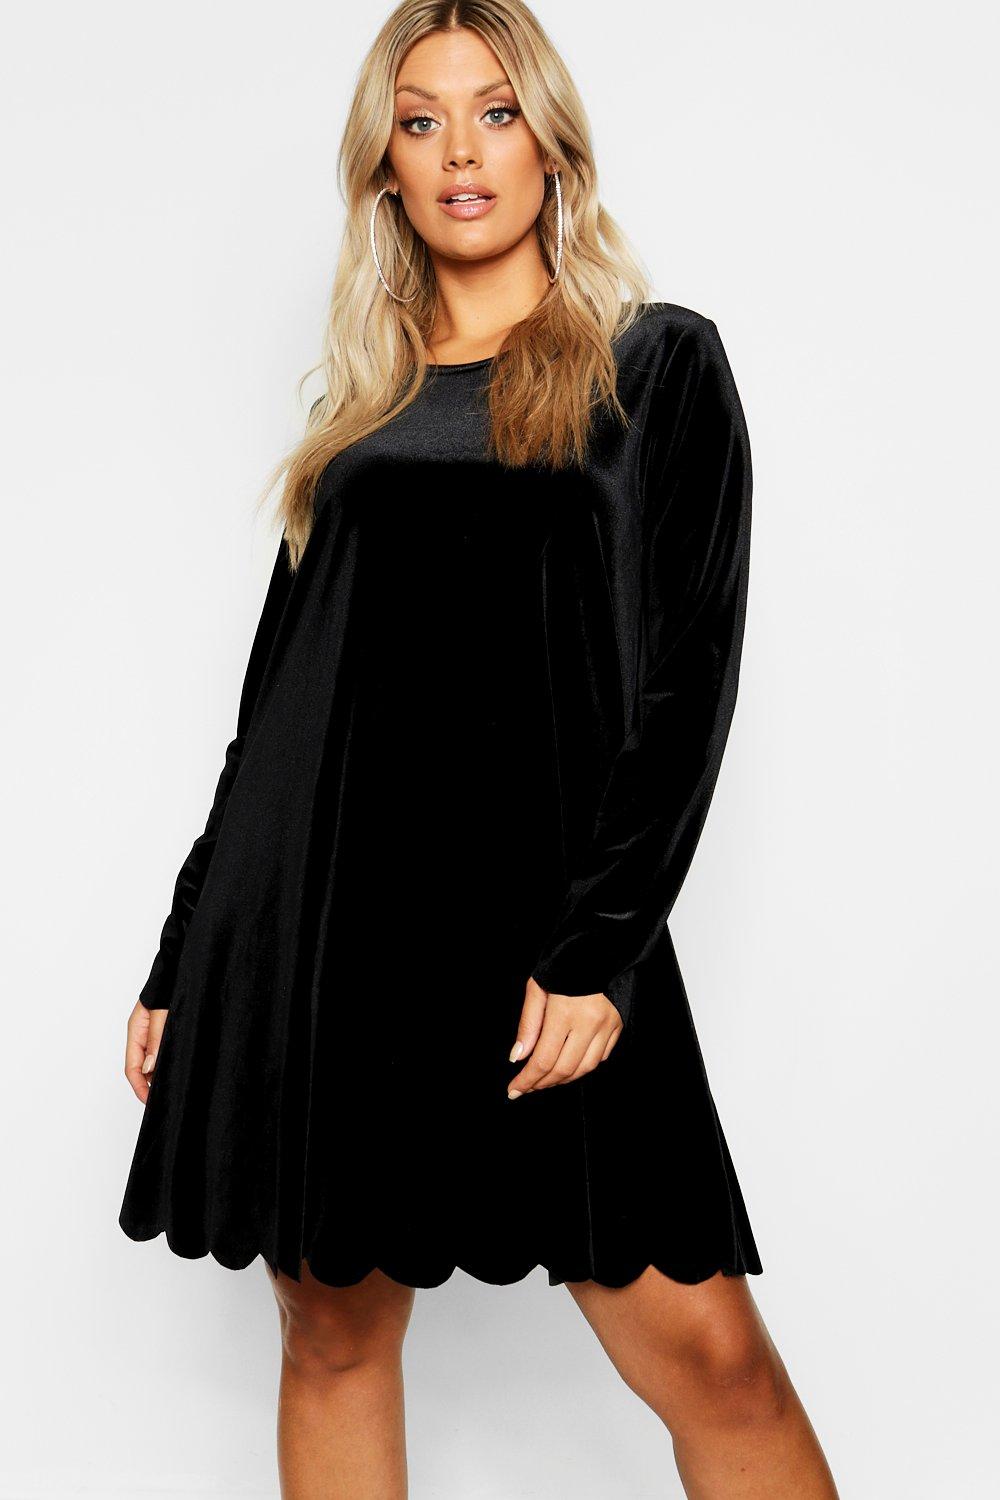 black velvet swing dress